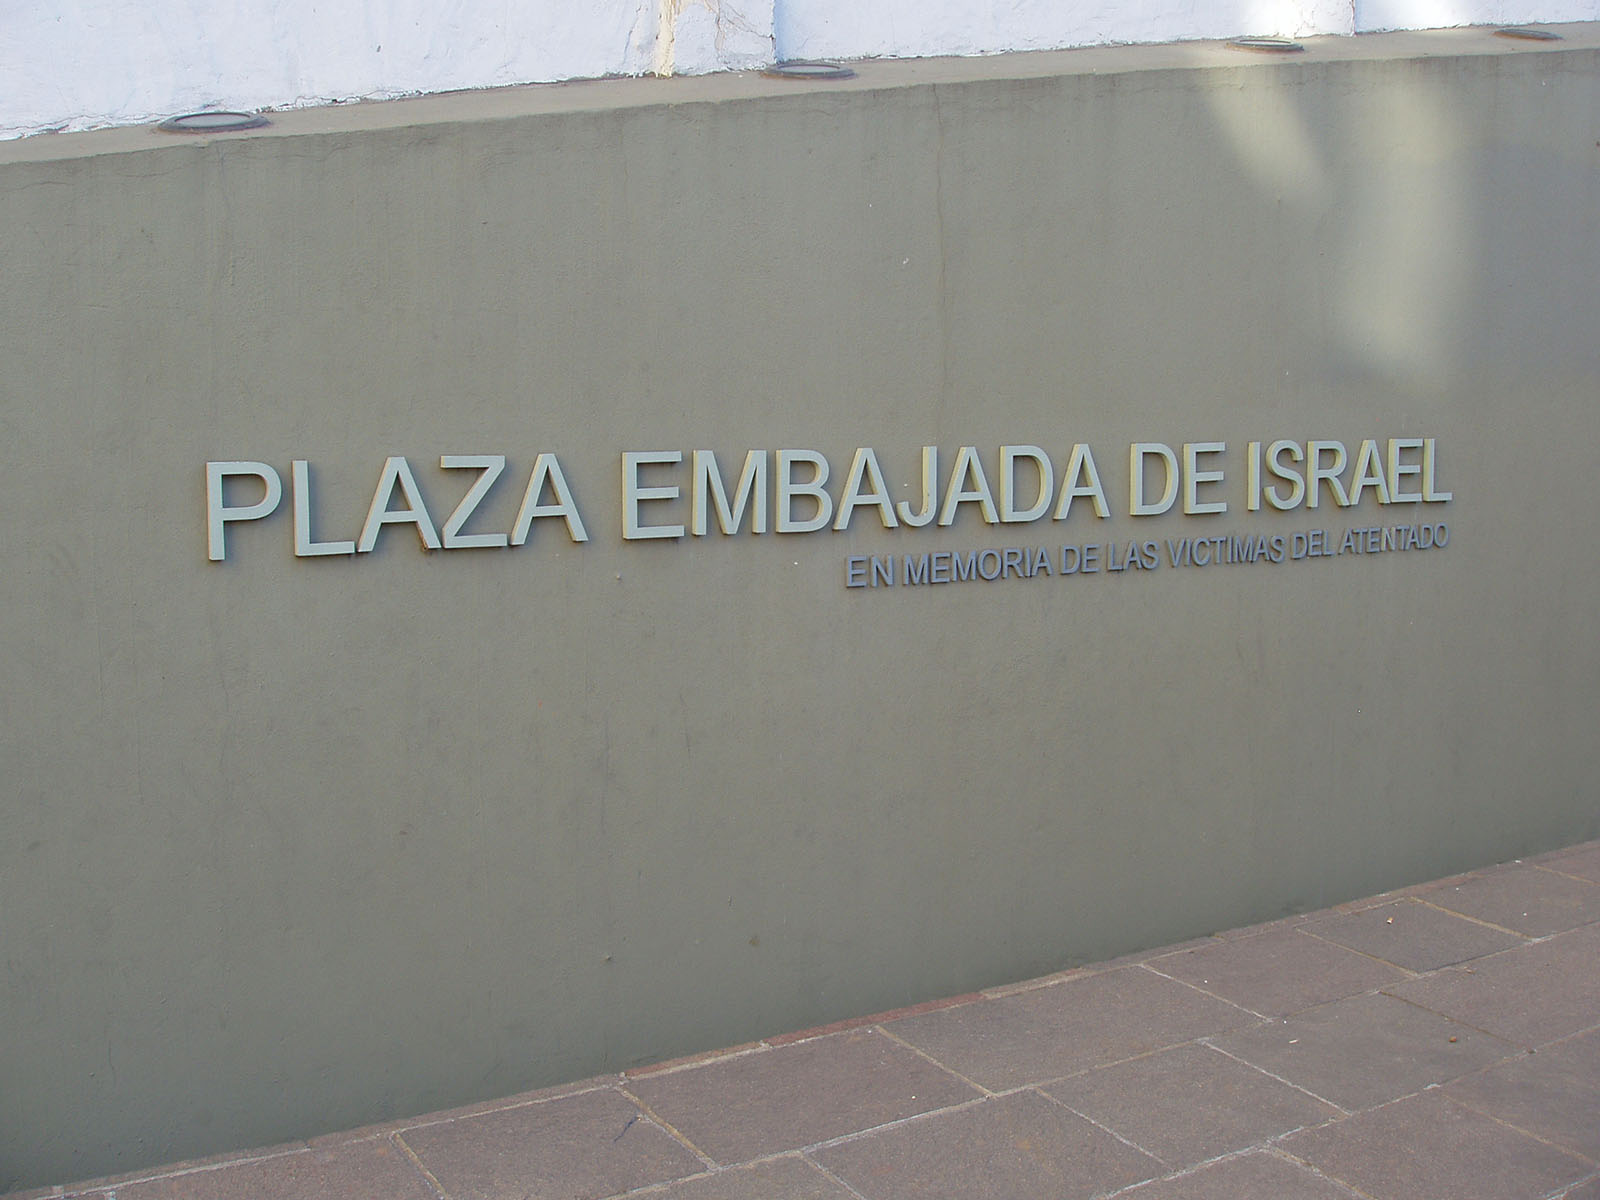 אנדרטה לזכר קורבנות הפיגוע בשגרירות ישראל בארגנטינה (צילום: ויקימדיה)